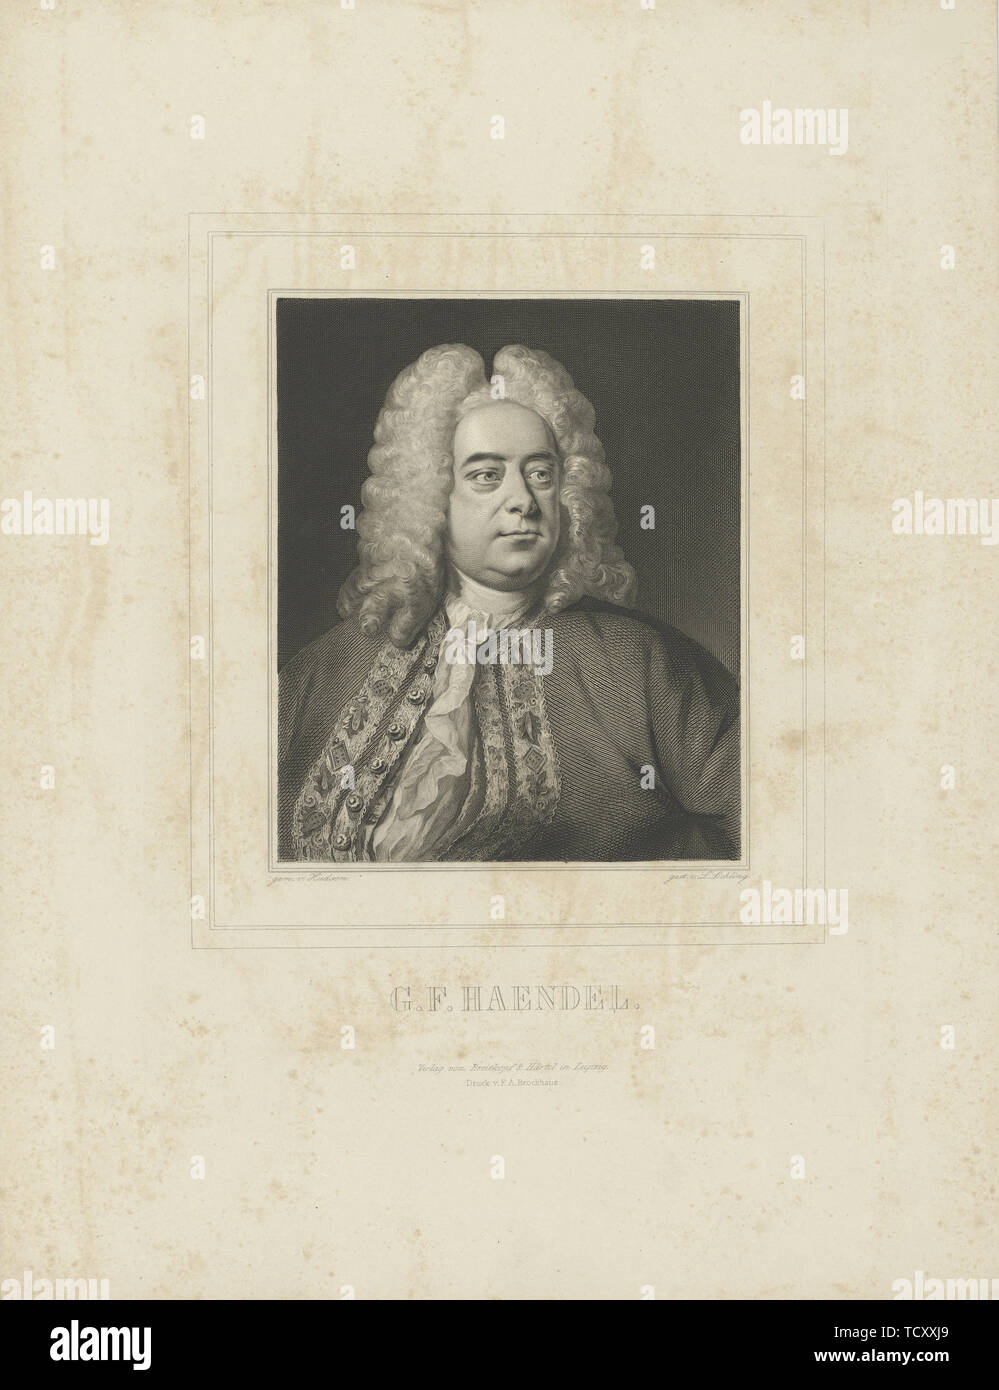 Ritratto del compositore Georg Friedrich Haendel (1685-1759), c. 1840. Creatore: Breitkopf & Härtel. Foto Stock